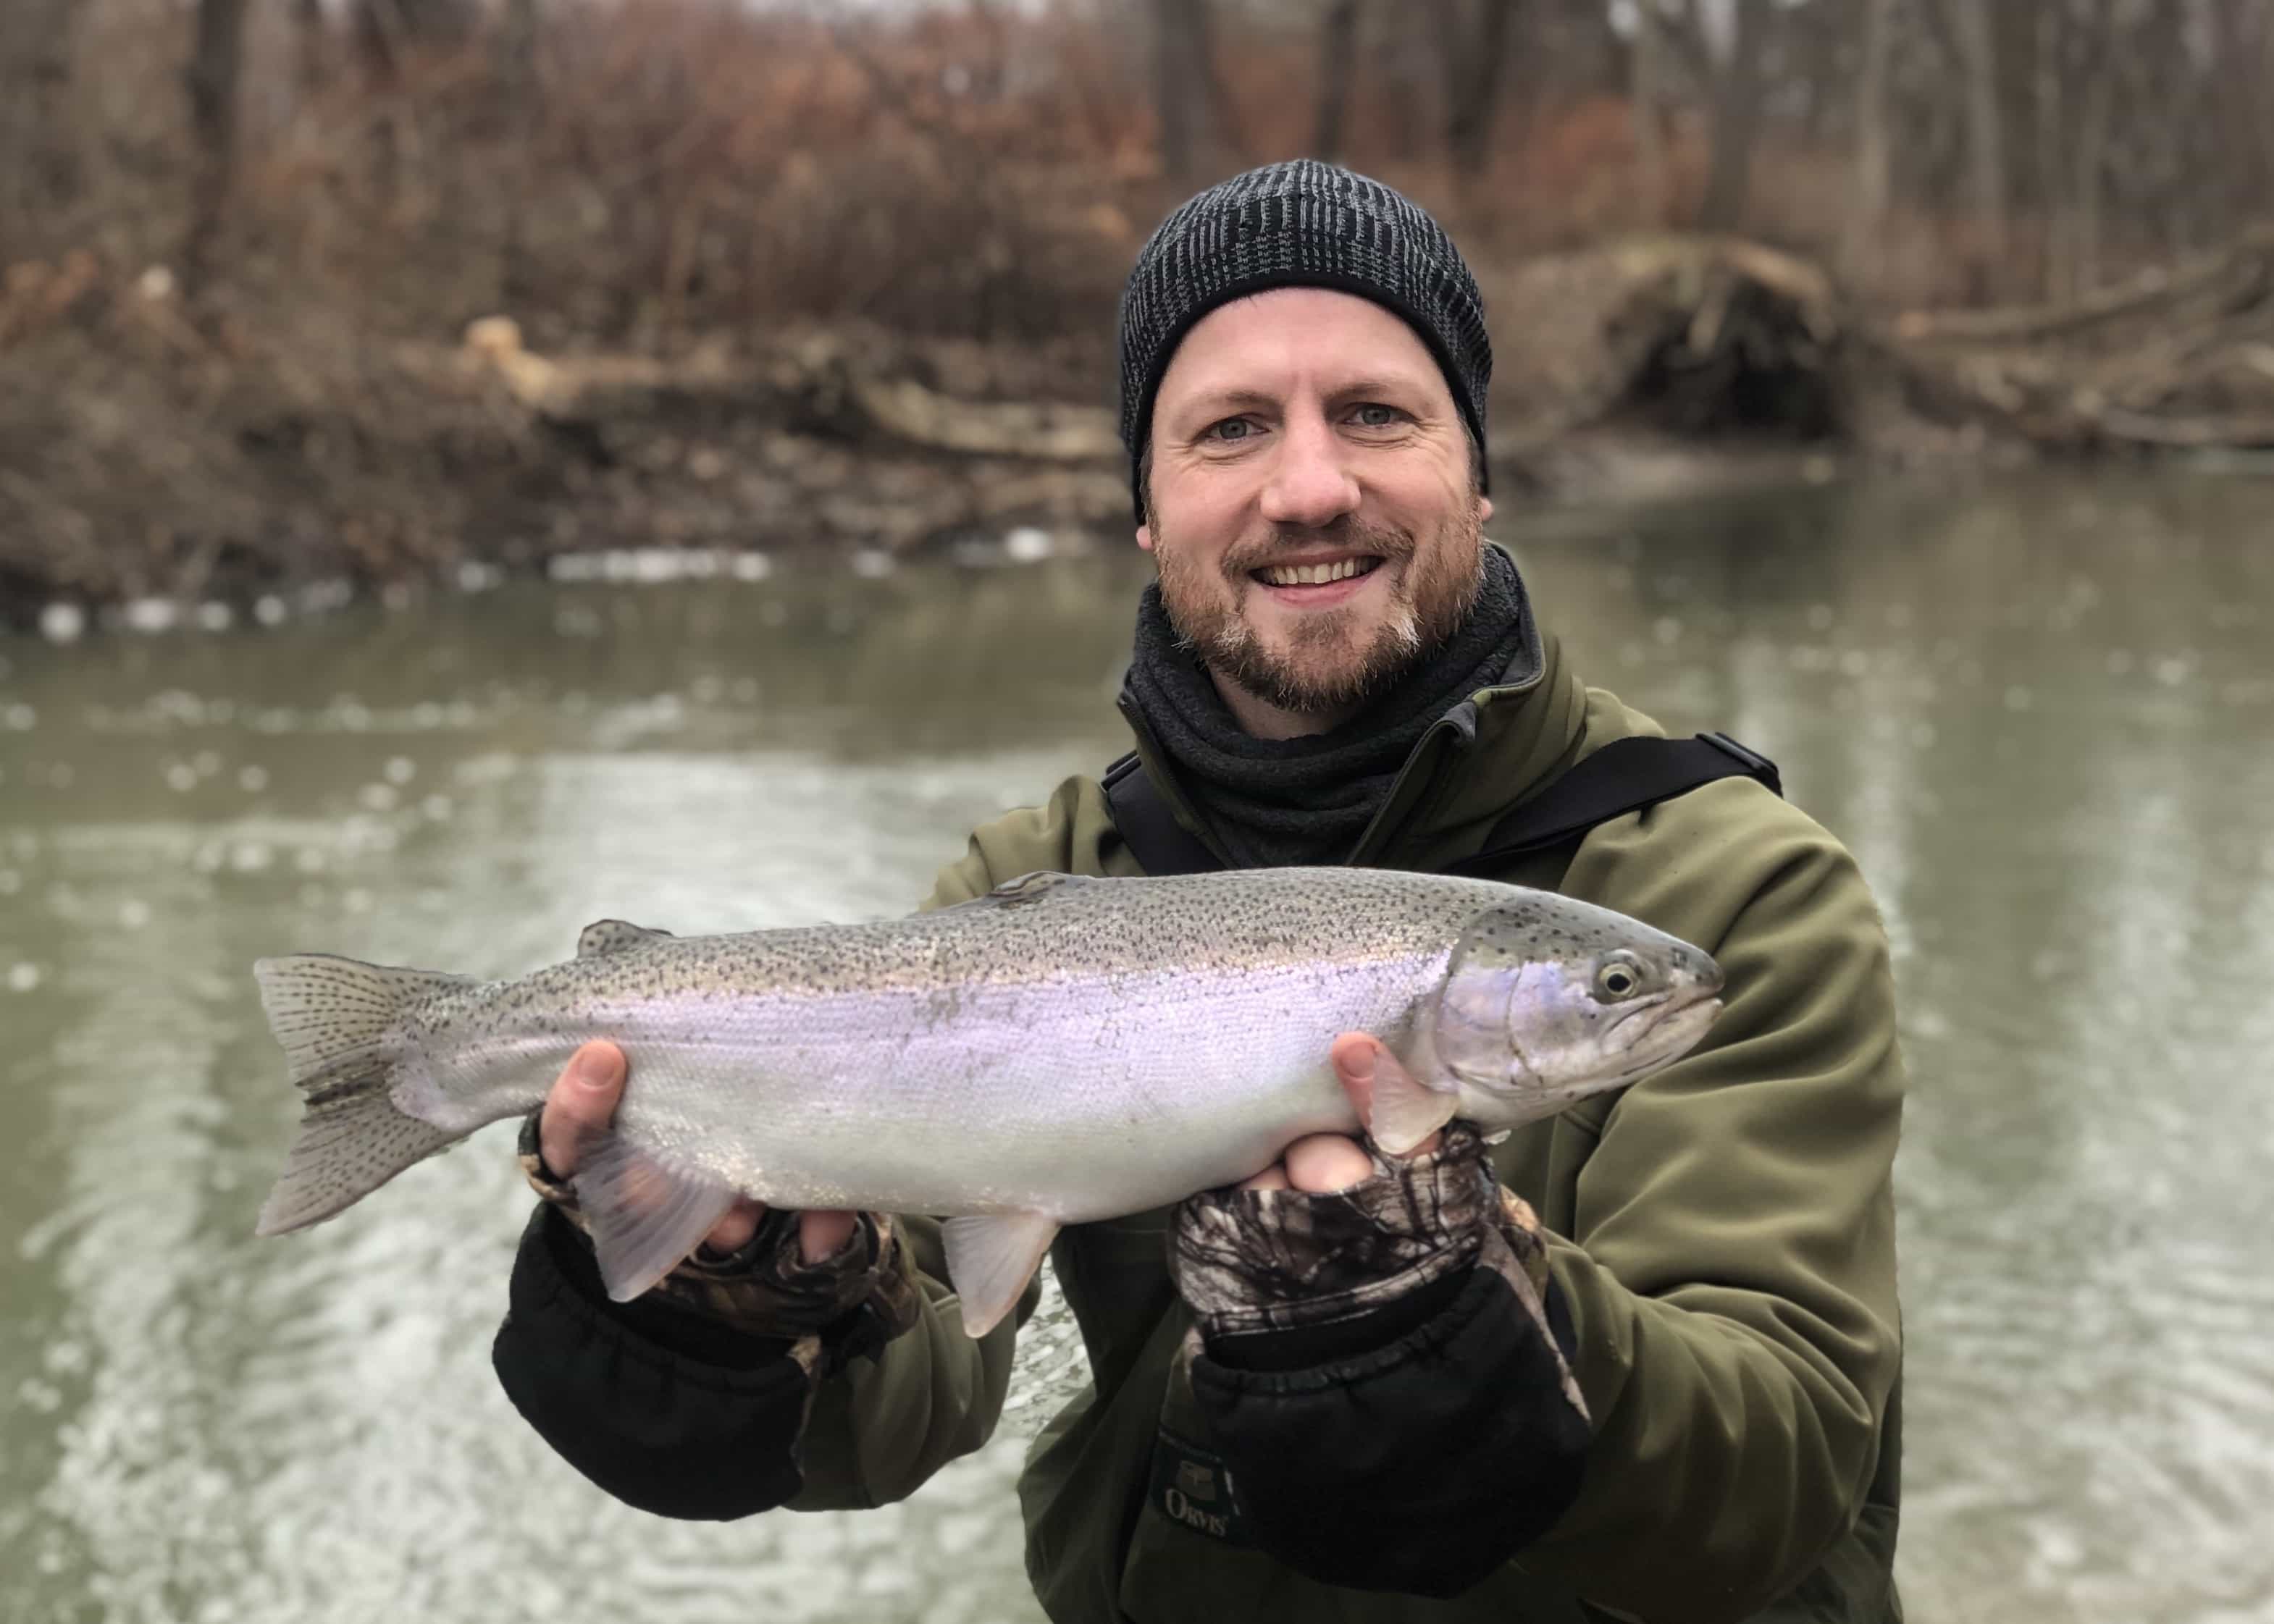 20181205 165237553 iOS - Winter Charter Fishing in Buffalo Niagara